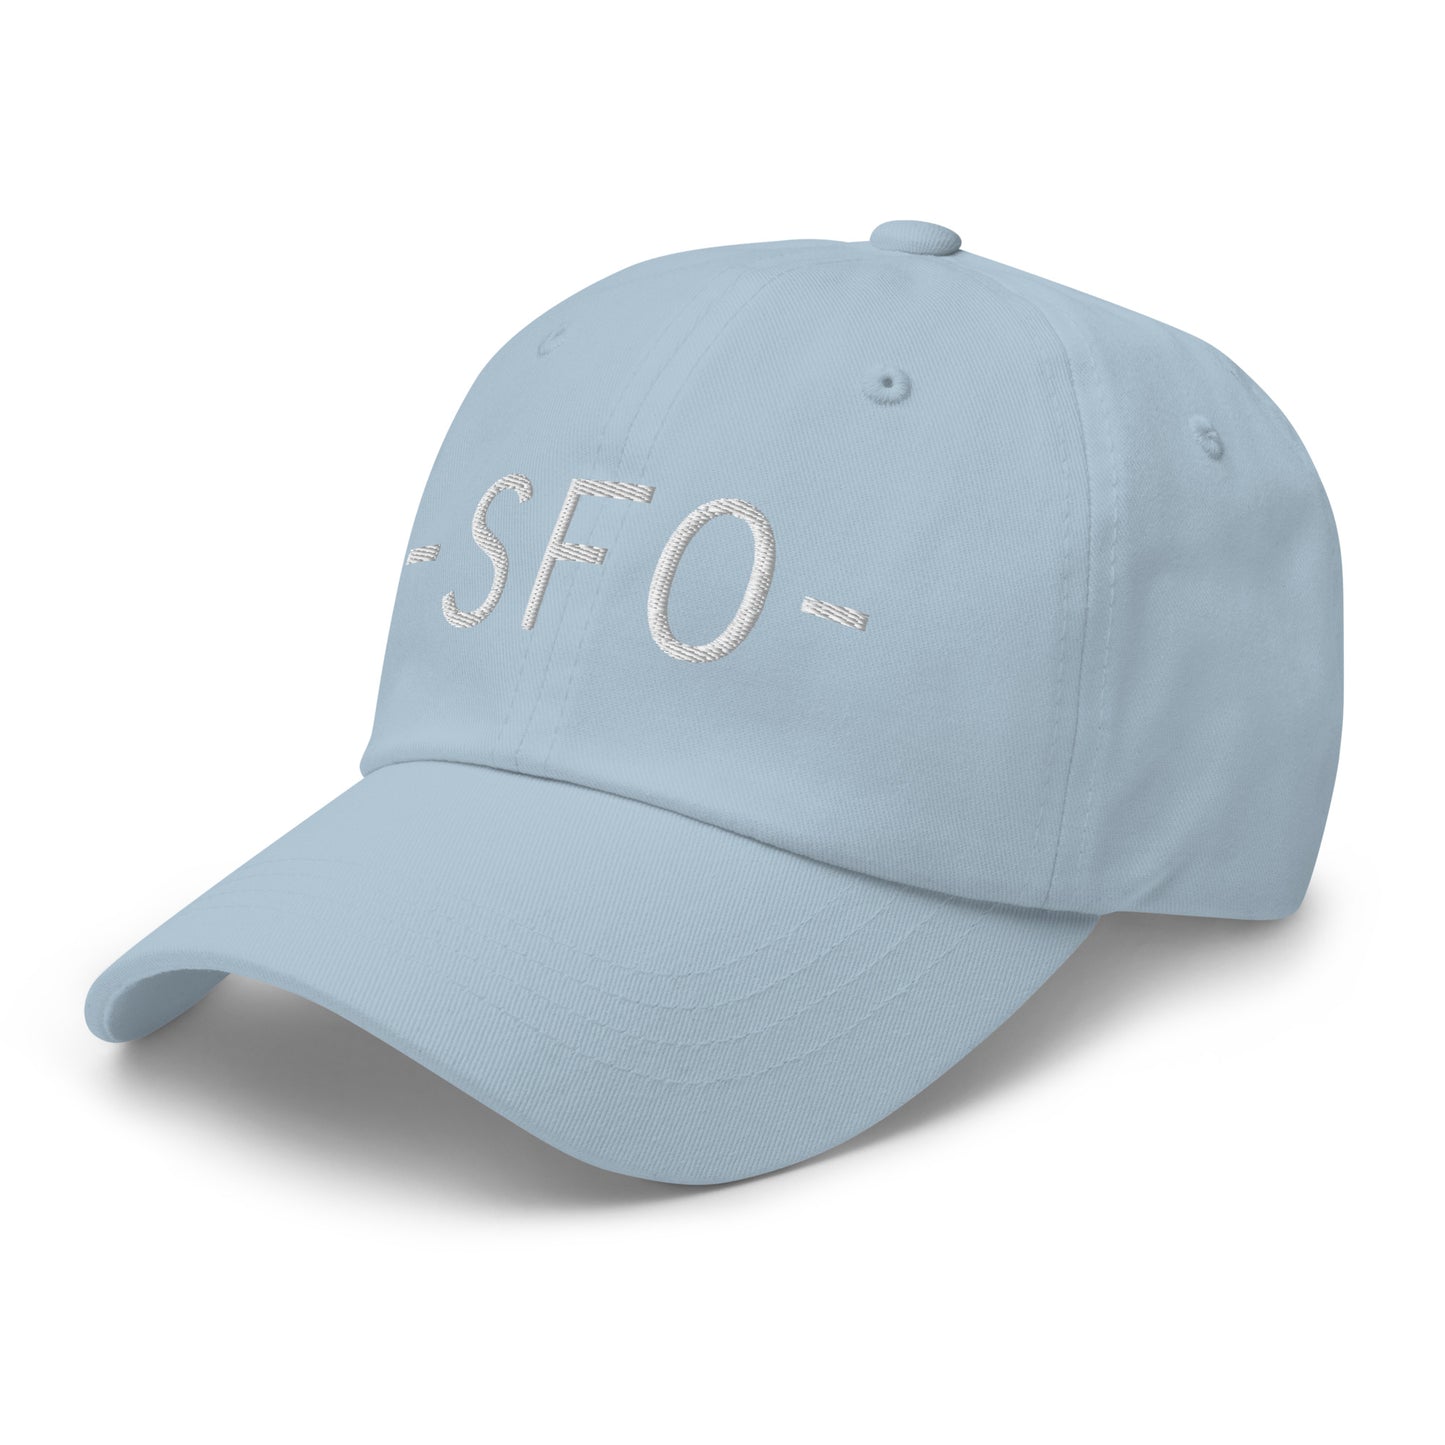 Souvenir Baseball Cap - White • SFO San Francisco • YHM Designs - Image 28